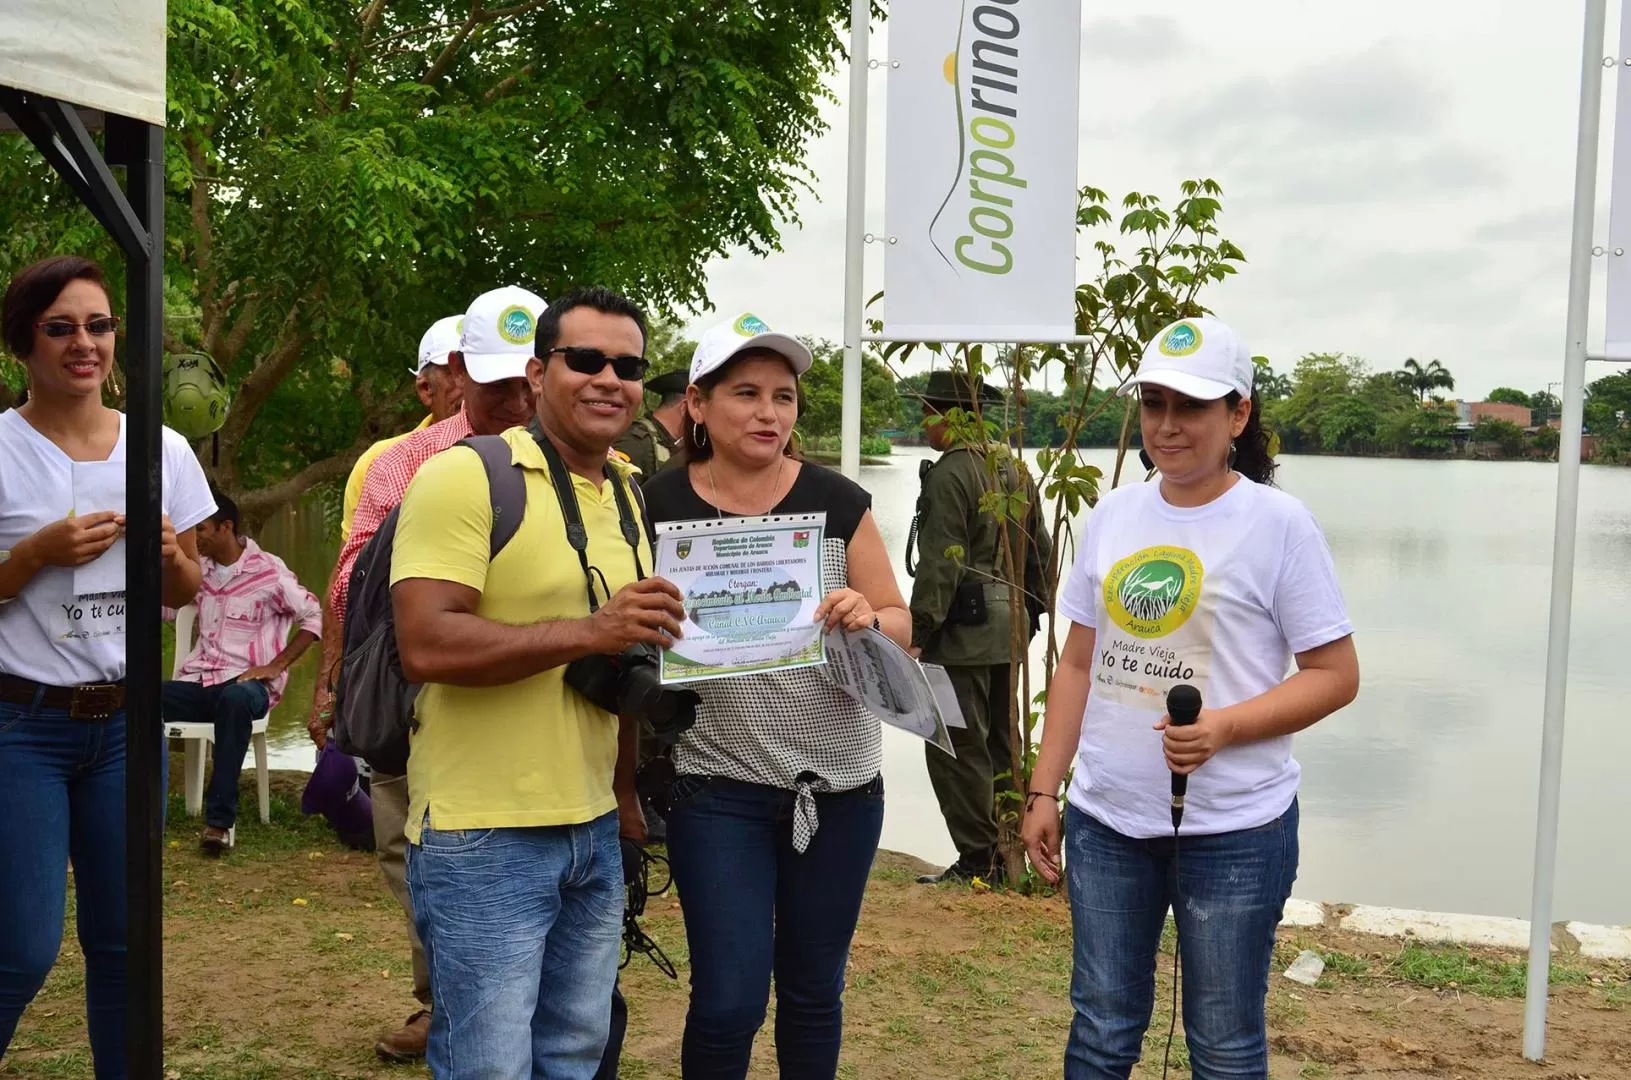 Las juntas de acción comunal de los barrios Libertadores y Miramar, entregaron menciones de honor a los medios de comunicación que ayudaron en la recuperación del humedal del La Madre Vieja en Arauca.